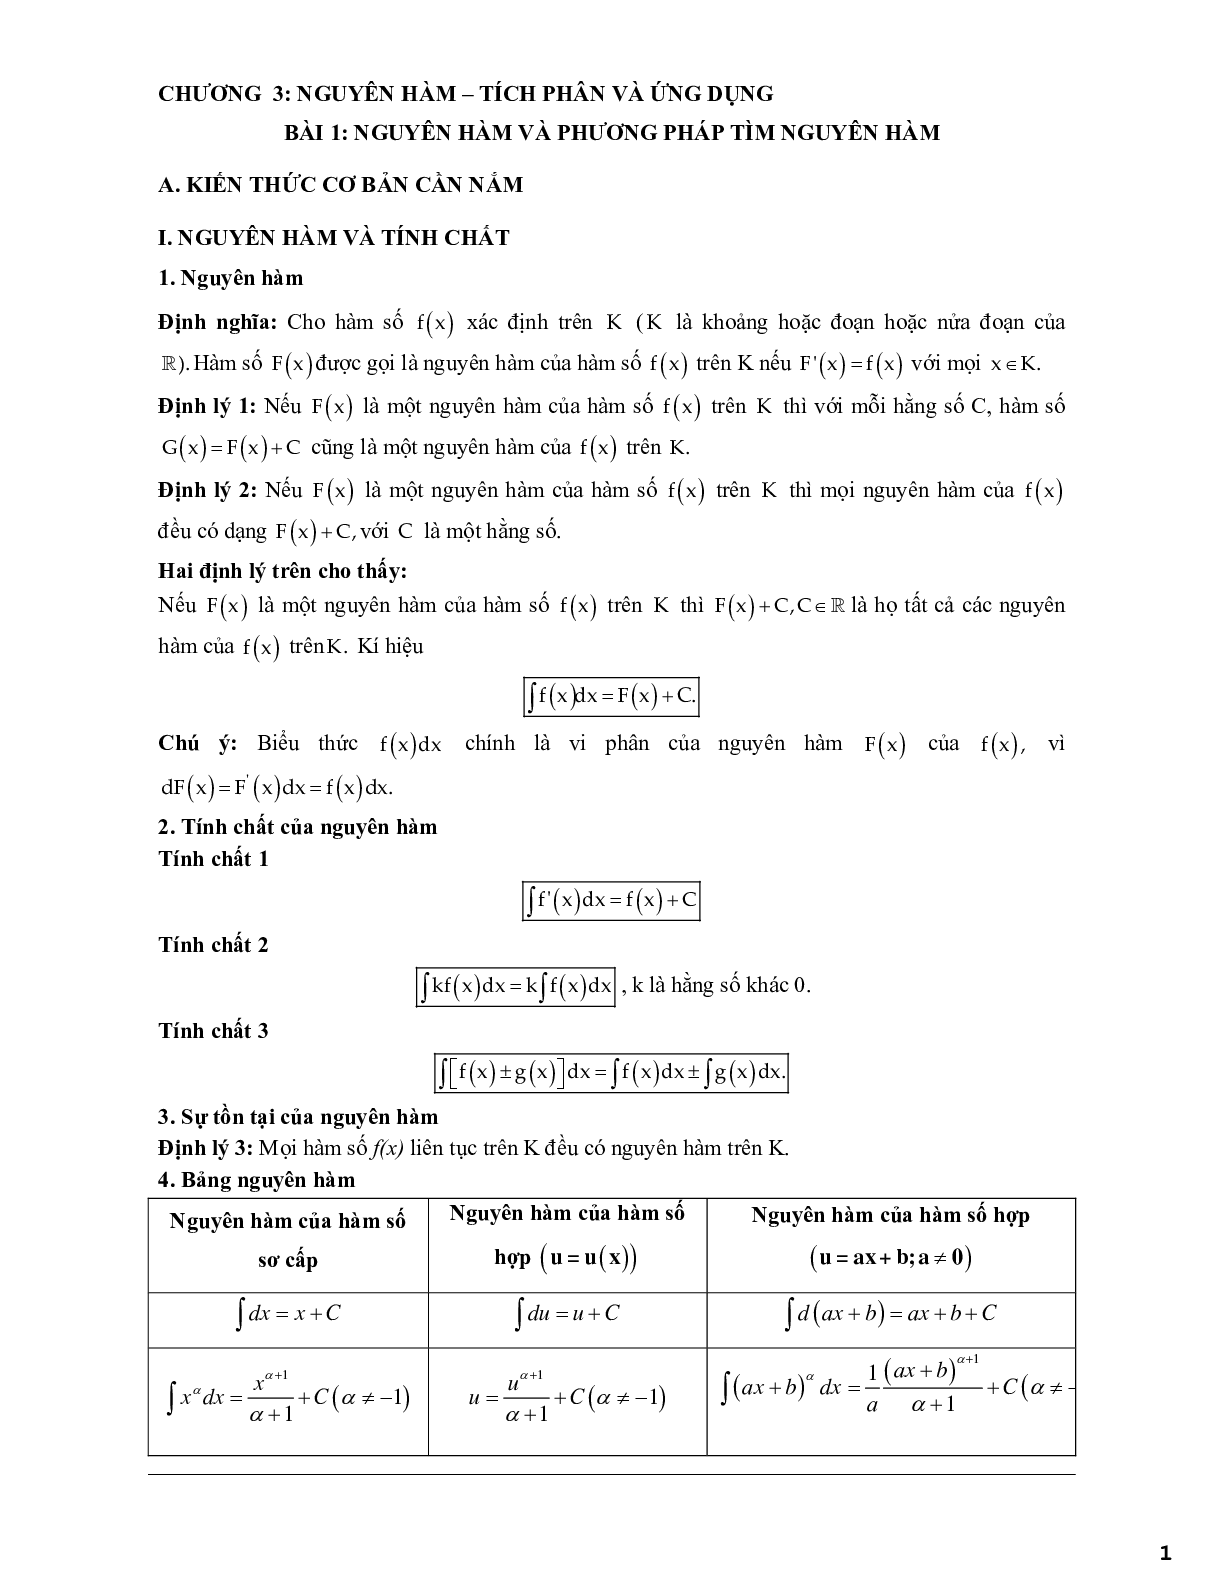 Các dạng bài tập trắc nghiệm vận dụng cao nguyên hàm và một số phương pháp tìm nguyên hàm (trang 1)